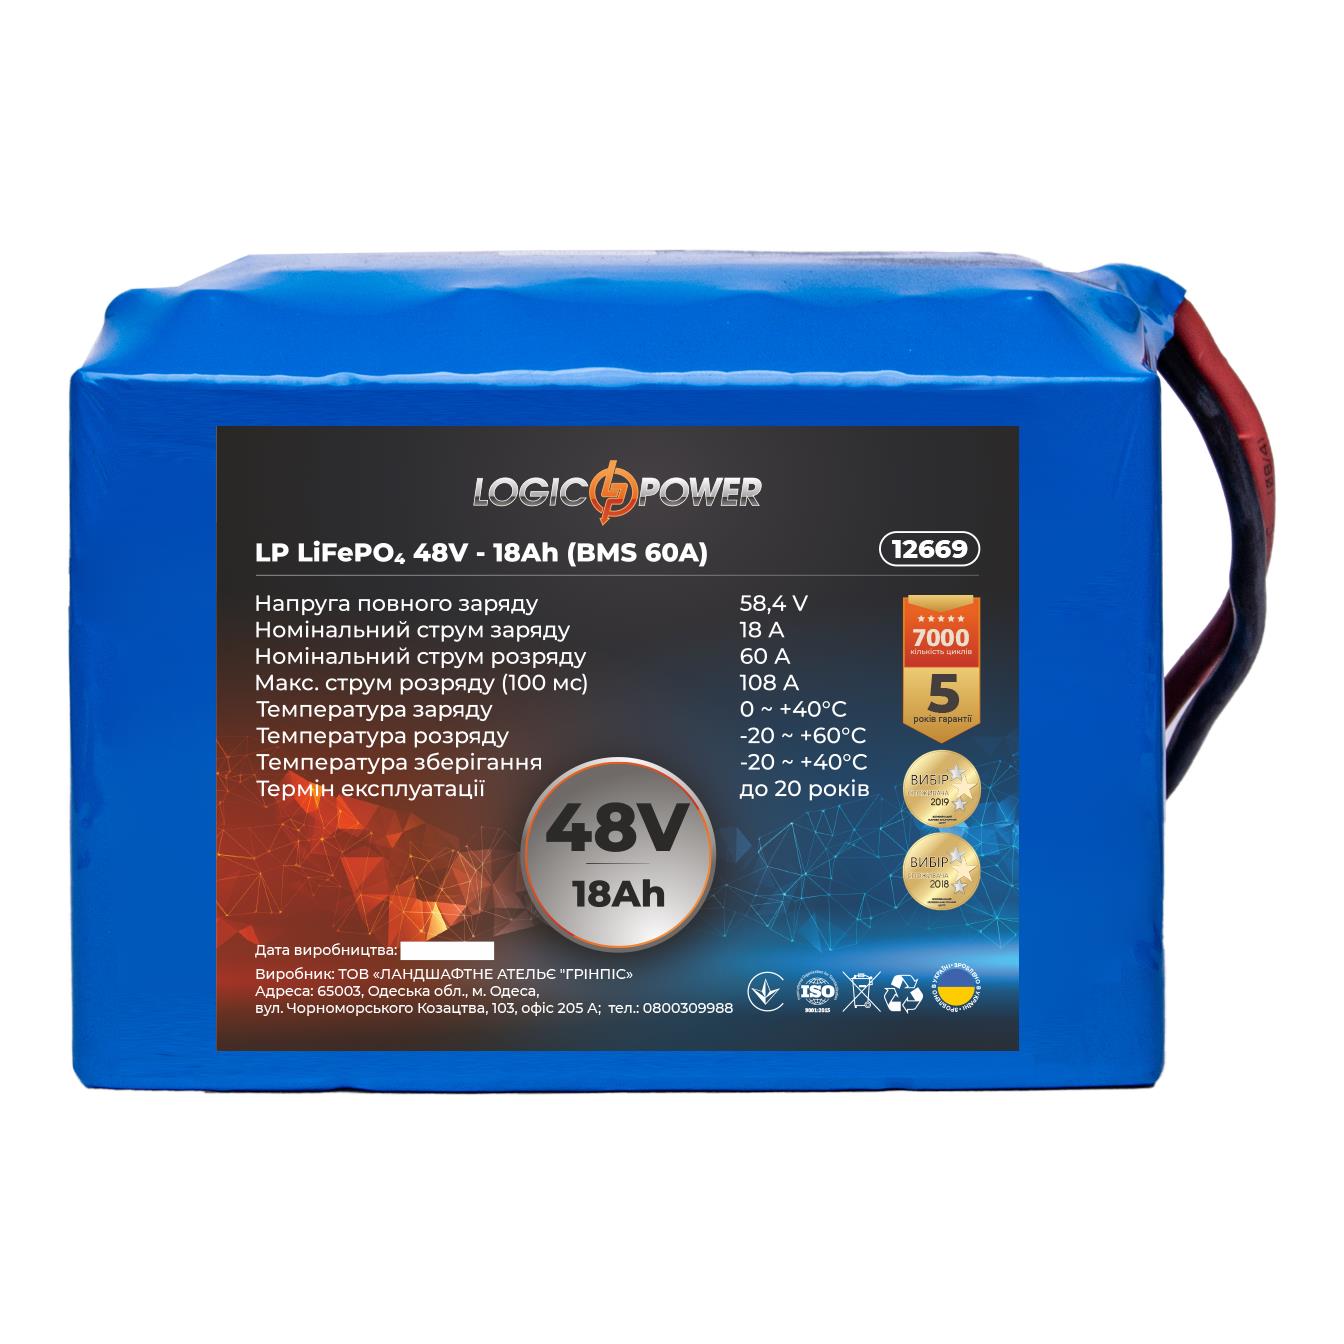 Аккумулятор литий-железо-фосфатный LogicPower LP LiFePO4 48V - 18 Ah (BMS 60A) (12669) в интернет-магазине, главное фото